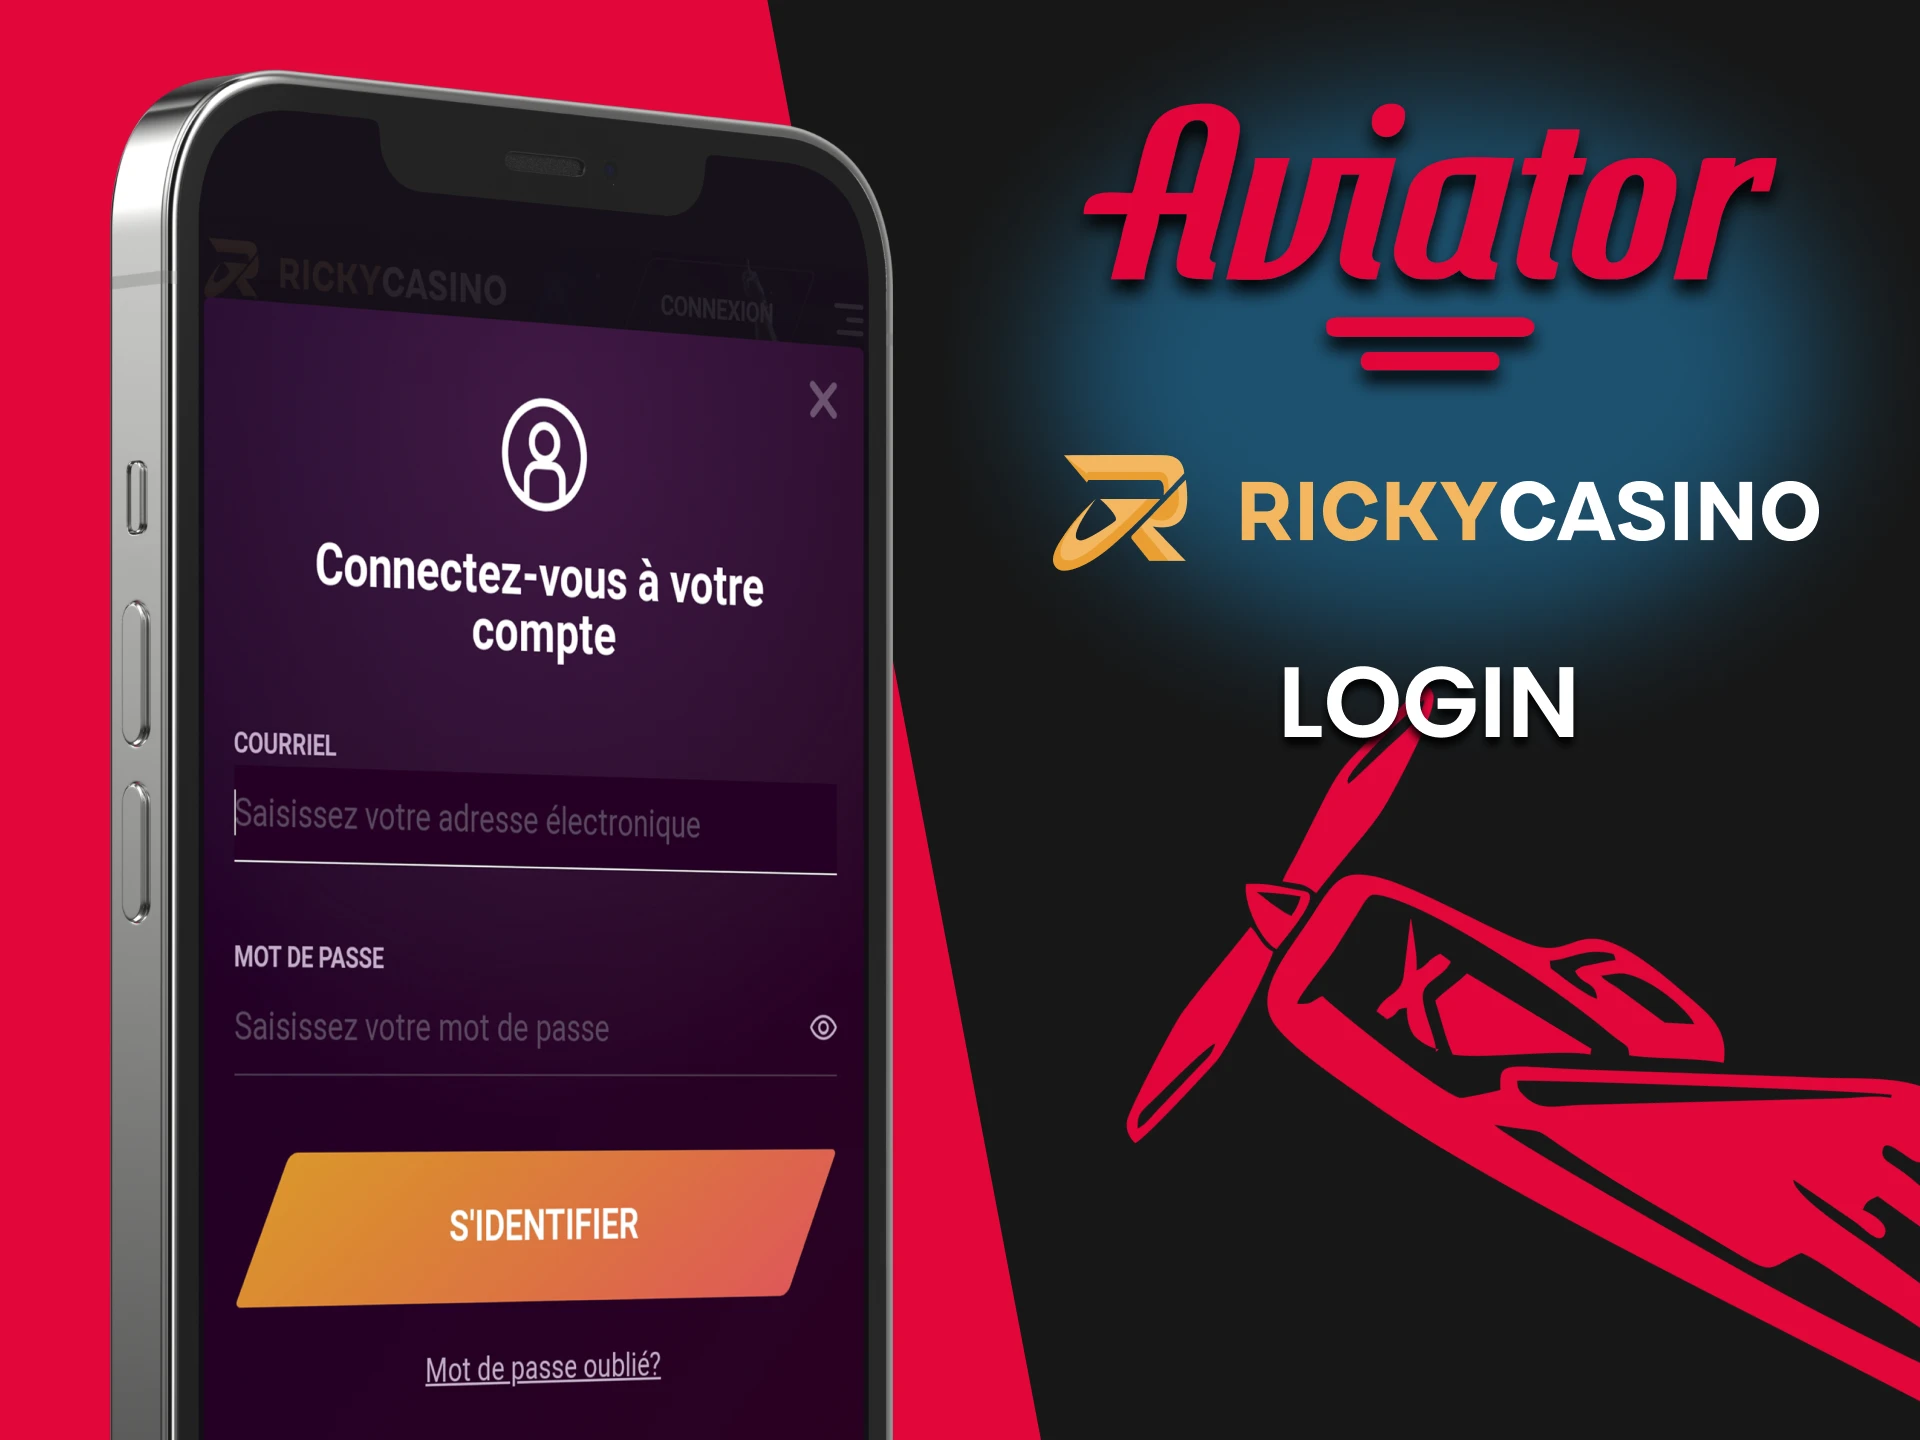 Connectez-vous à l'application Ricky Casino pour jouer à Aviator.